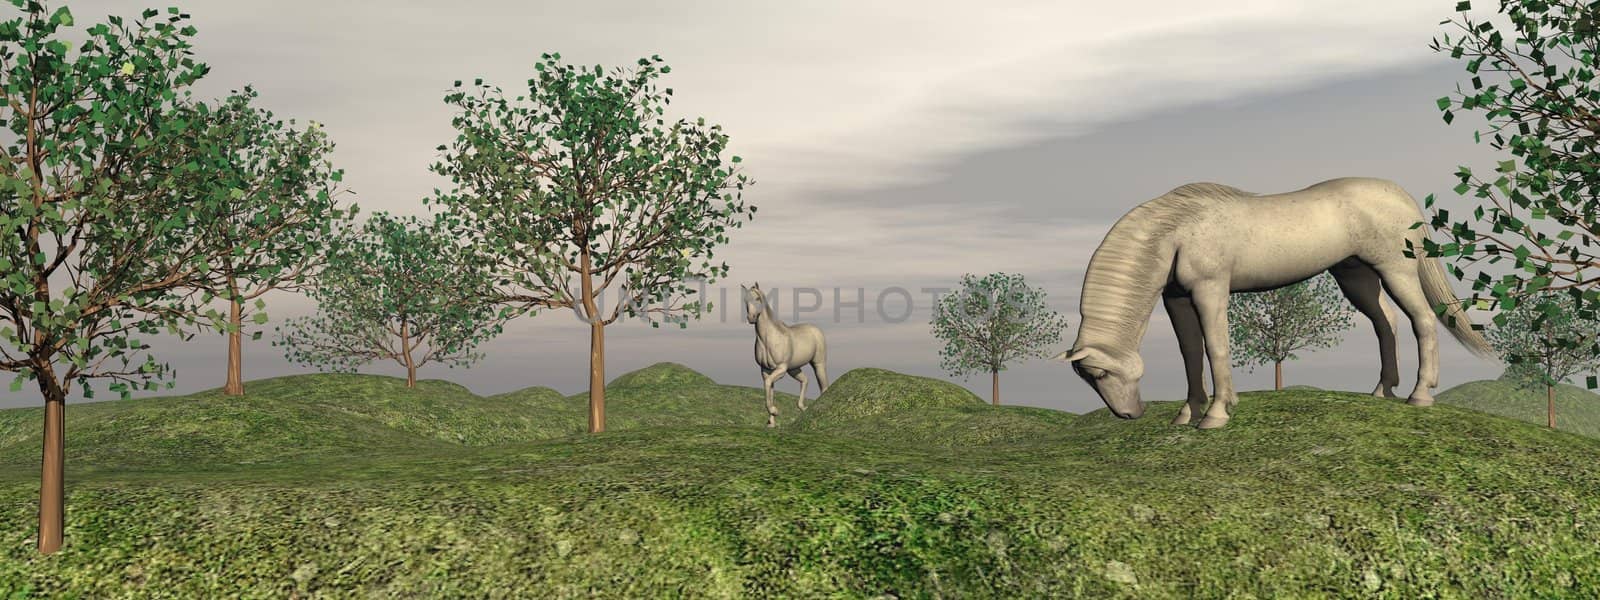 Fleabitten grey horses in nature - 3D render by Elenaphotos21